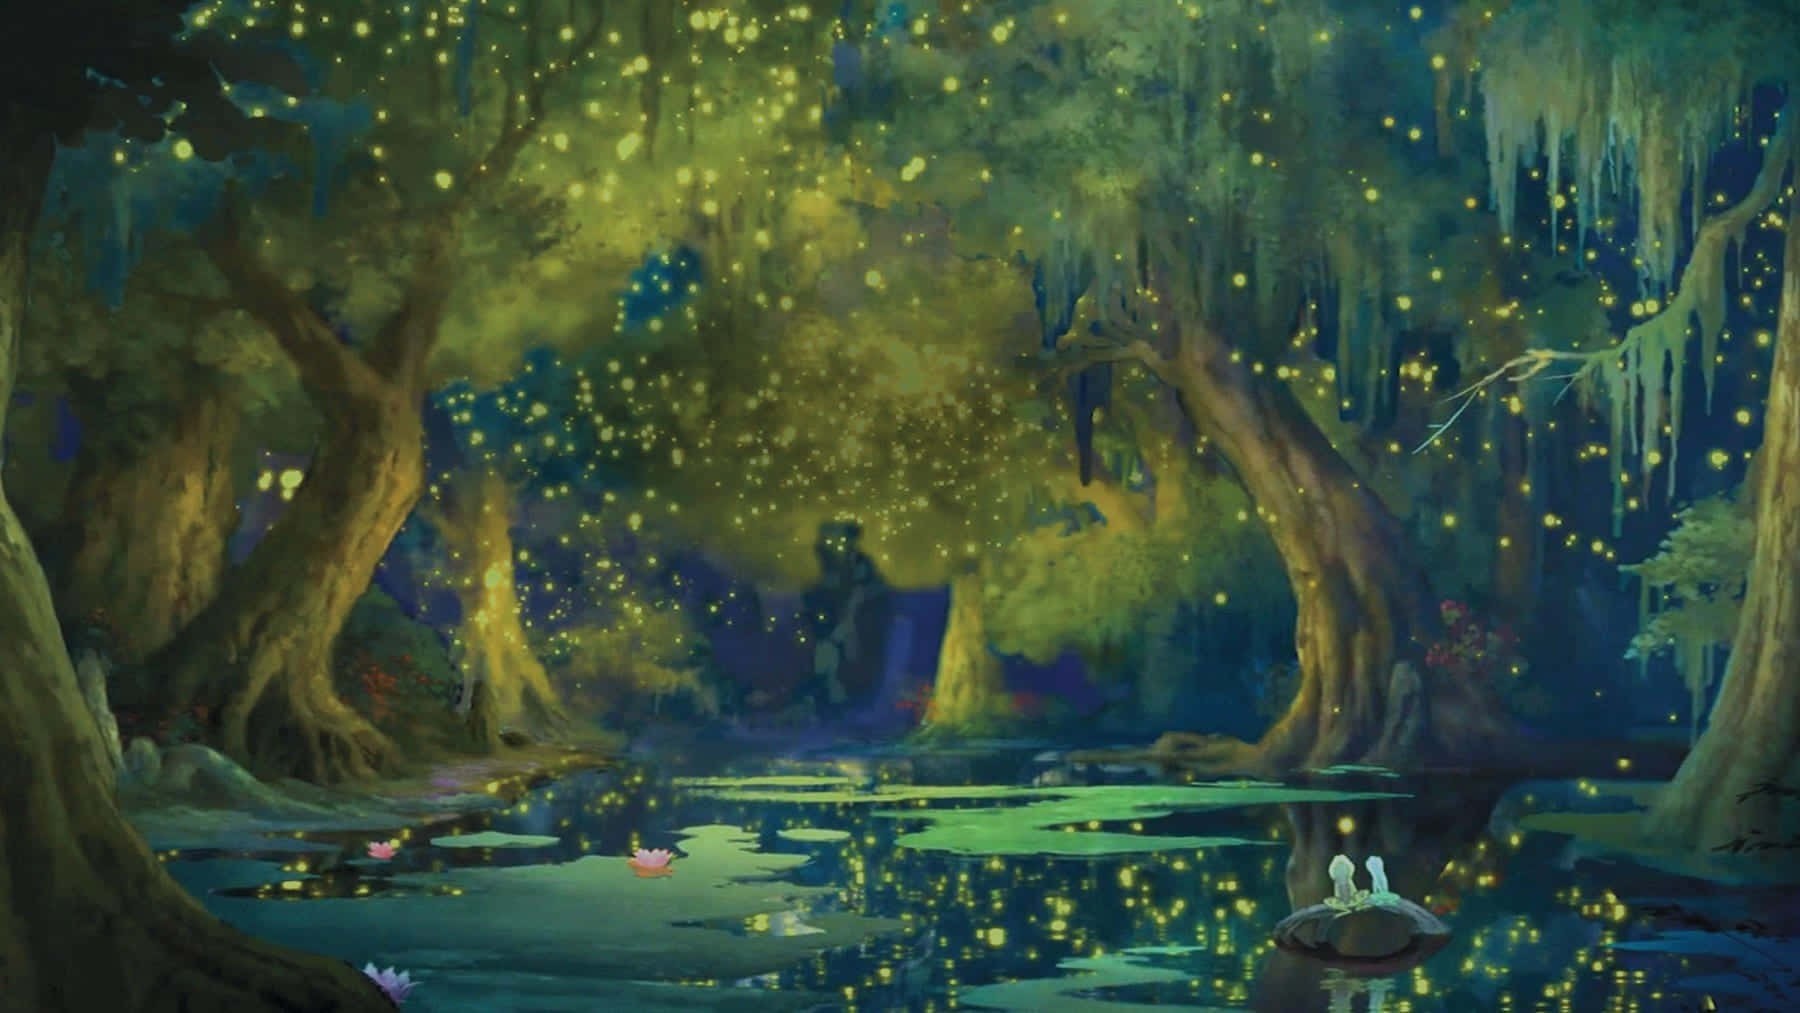 Eingemälde Eines Waldes Mit Glühwürmchen Im Wasser.